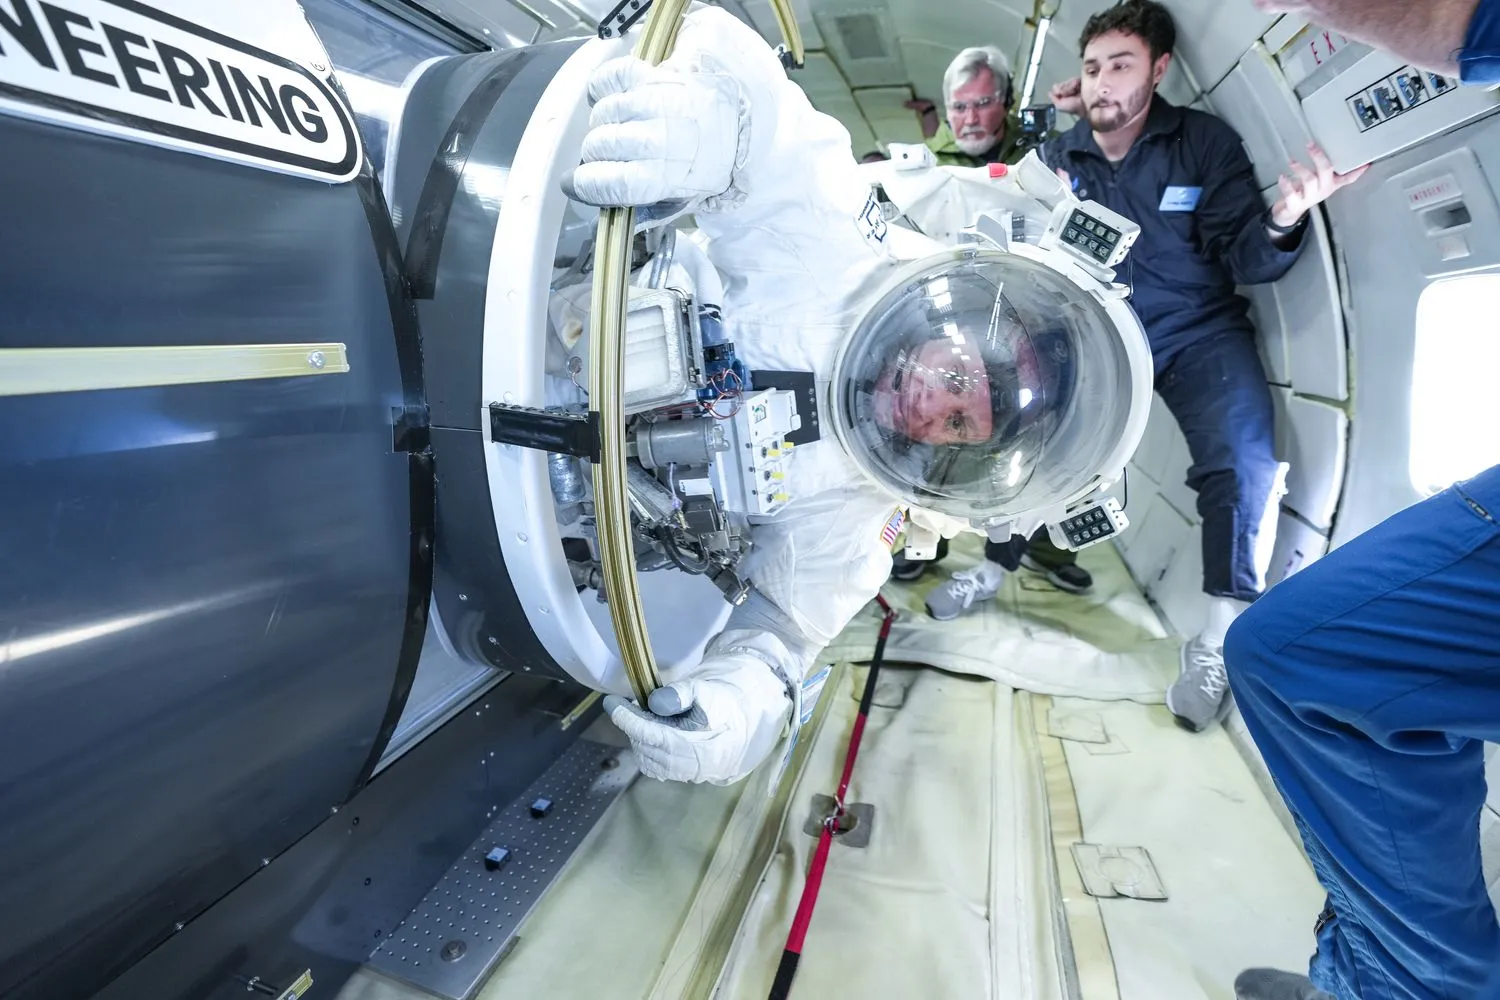 eine Person in einem klobigen Raumanzug schwebt in einem Flugzeugrumpf, umgeben von Menschen in blauen Fluganzügen